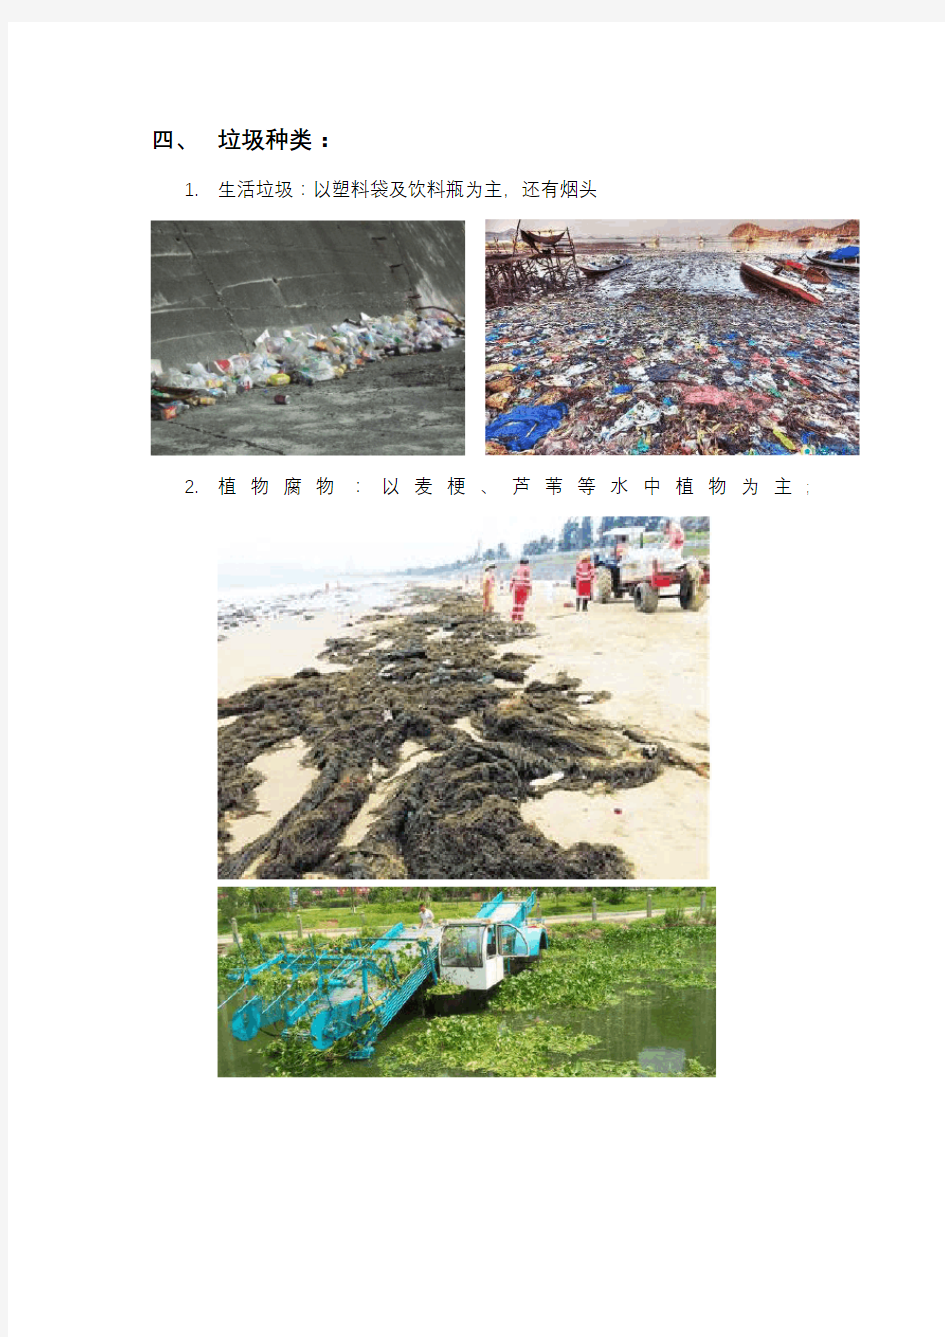 海洋垃圾、沿海滩涂垃圾成因及其处理方式资料